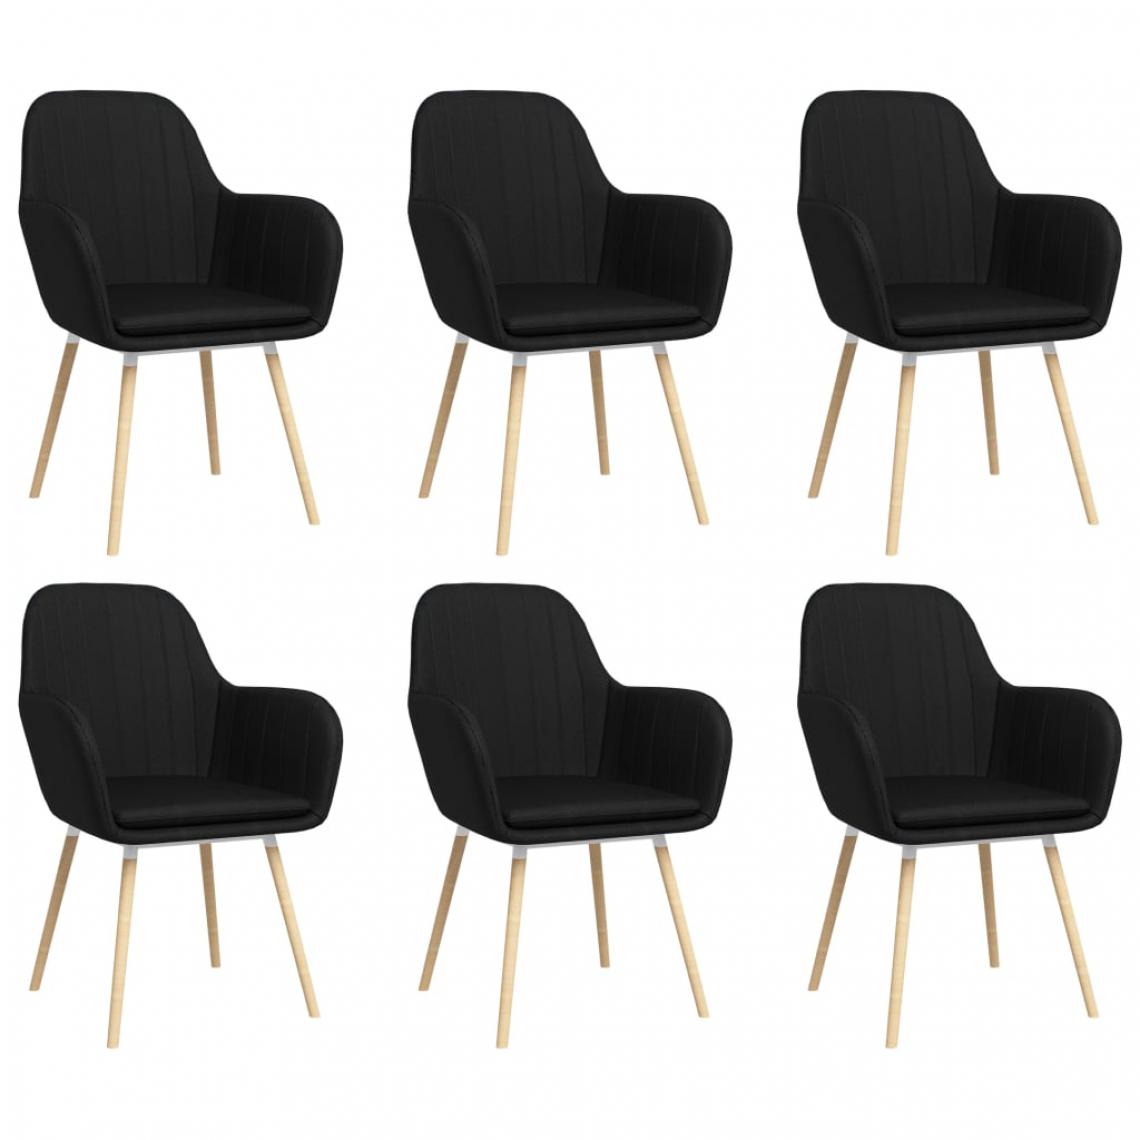 Icaverne - Inedit Fauteuils et chaises edition Ottawa Chaises de salle à manger avec accoudoirs 6 pcs Noir Tissu - Chaises